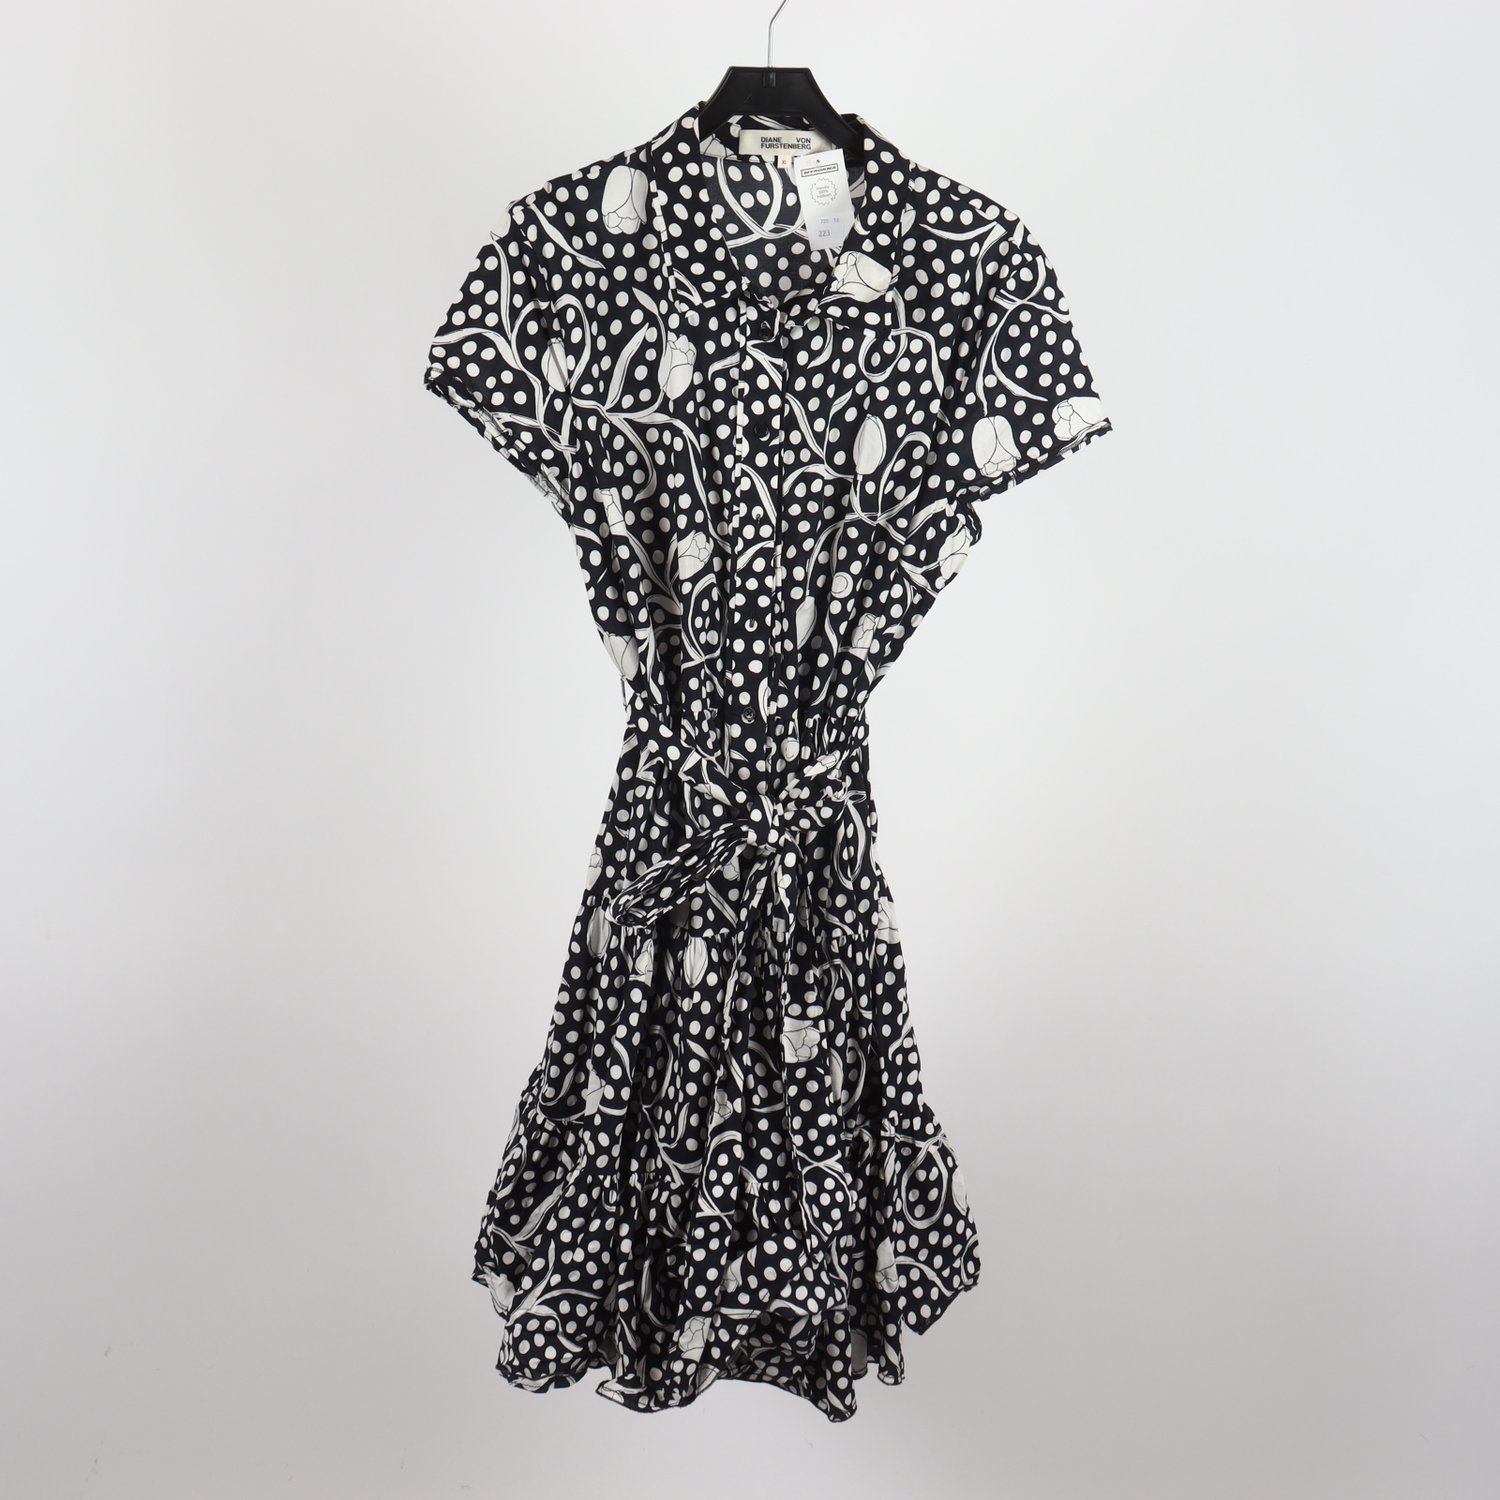 Klänning, Diane von Furstenberg, svart/, mönstrad, stl. XL